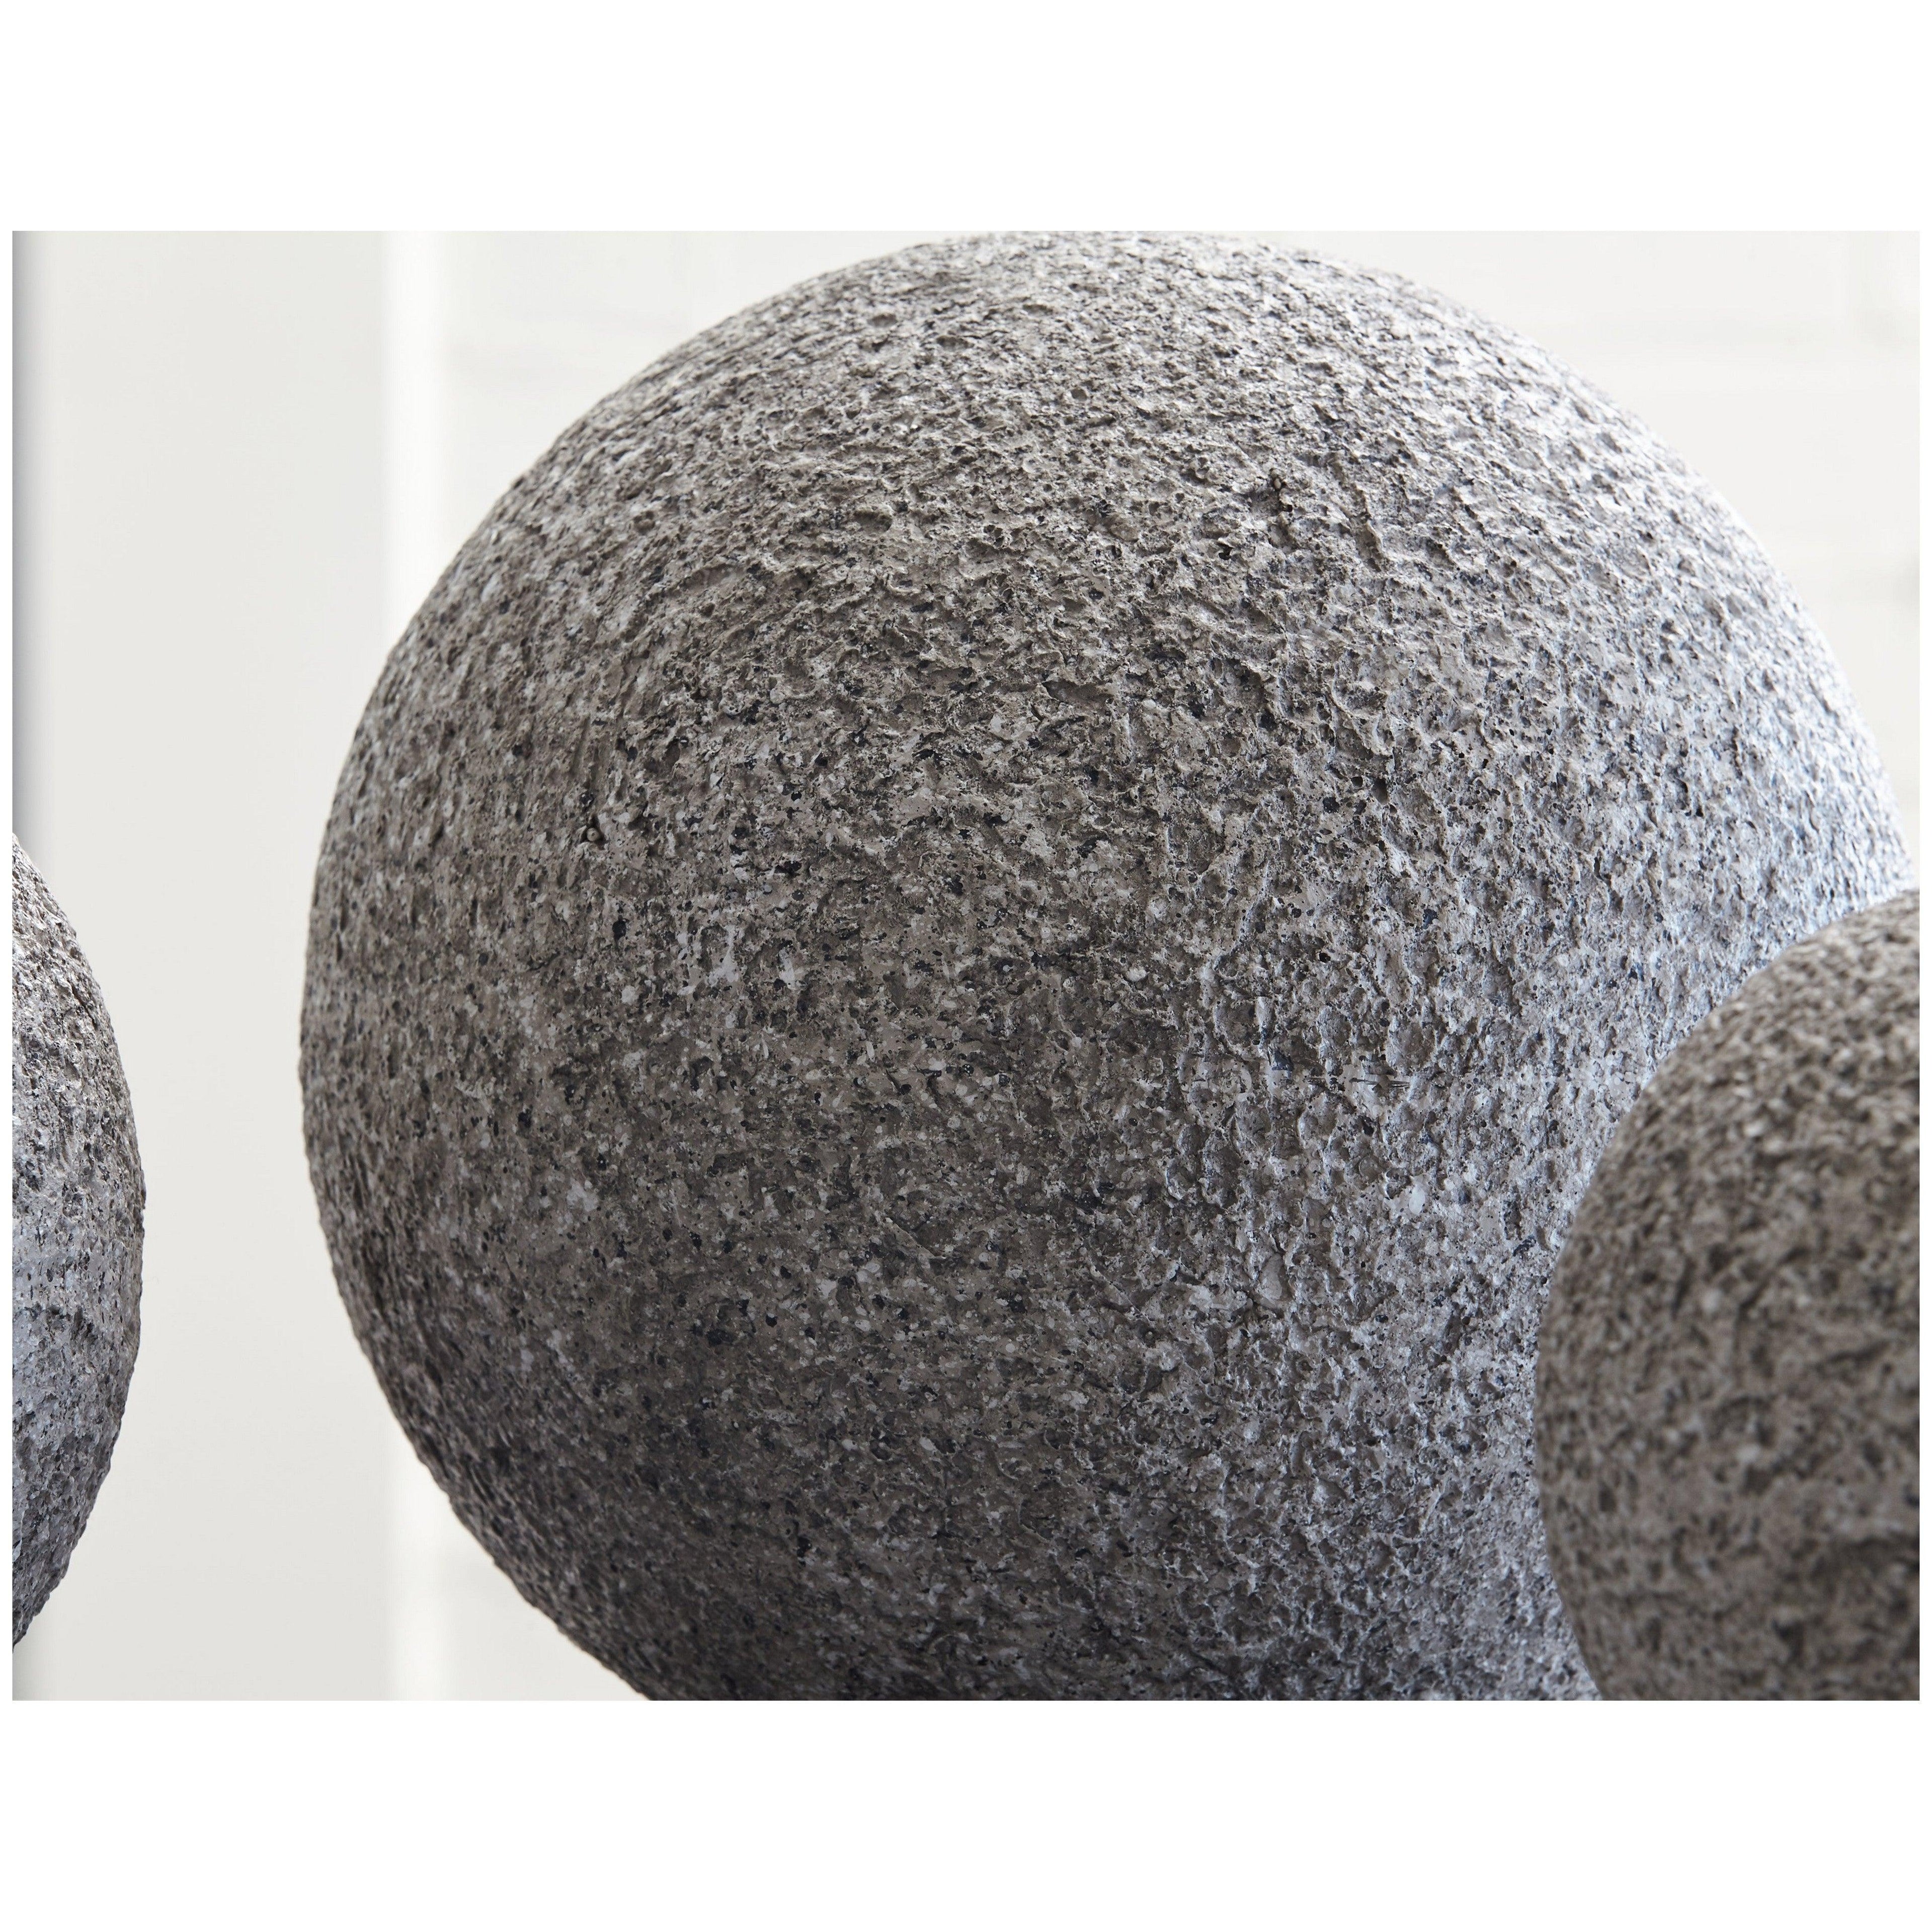 Chanlow Sculpture Ash-A2000496S